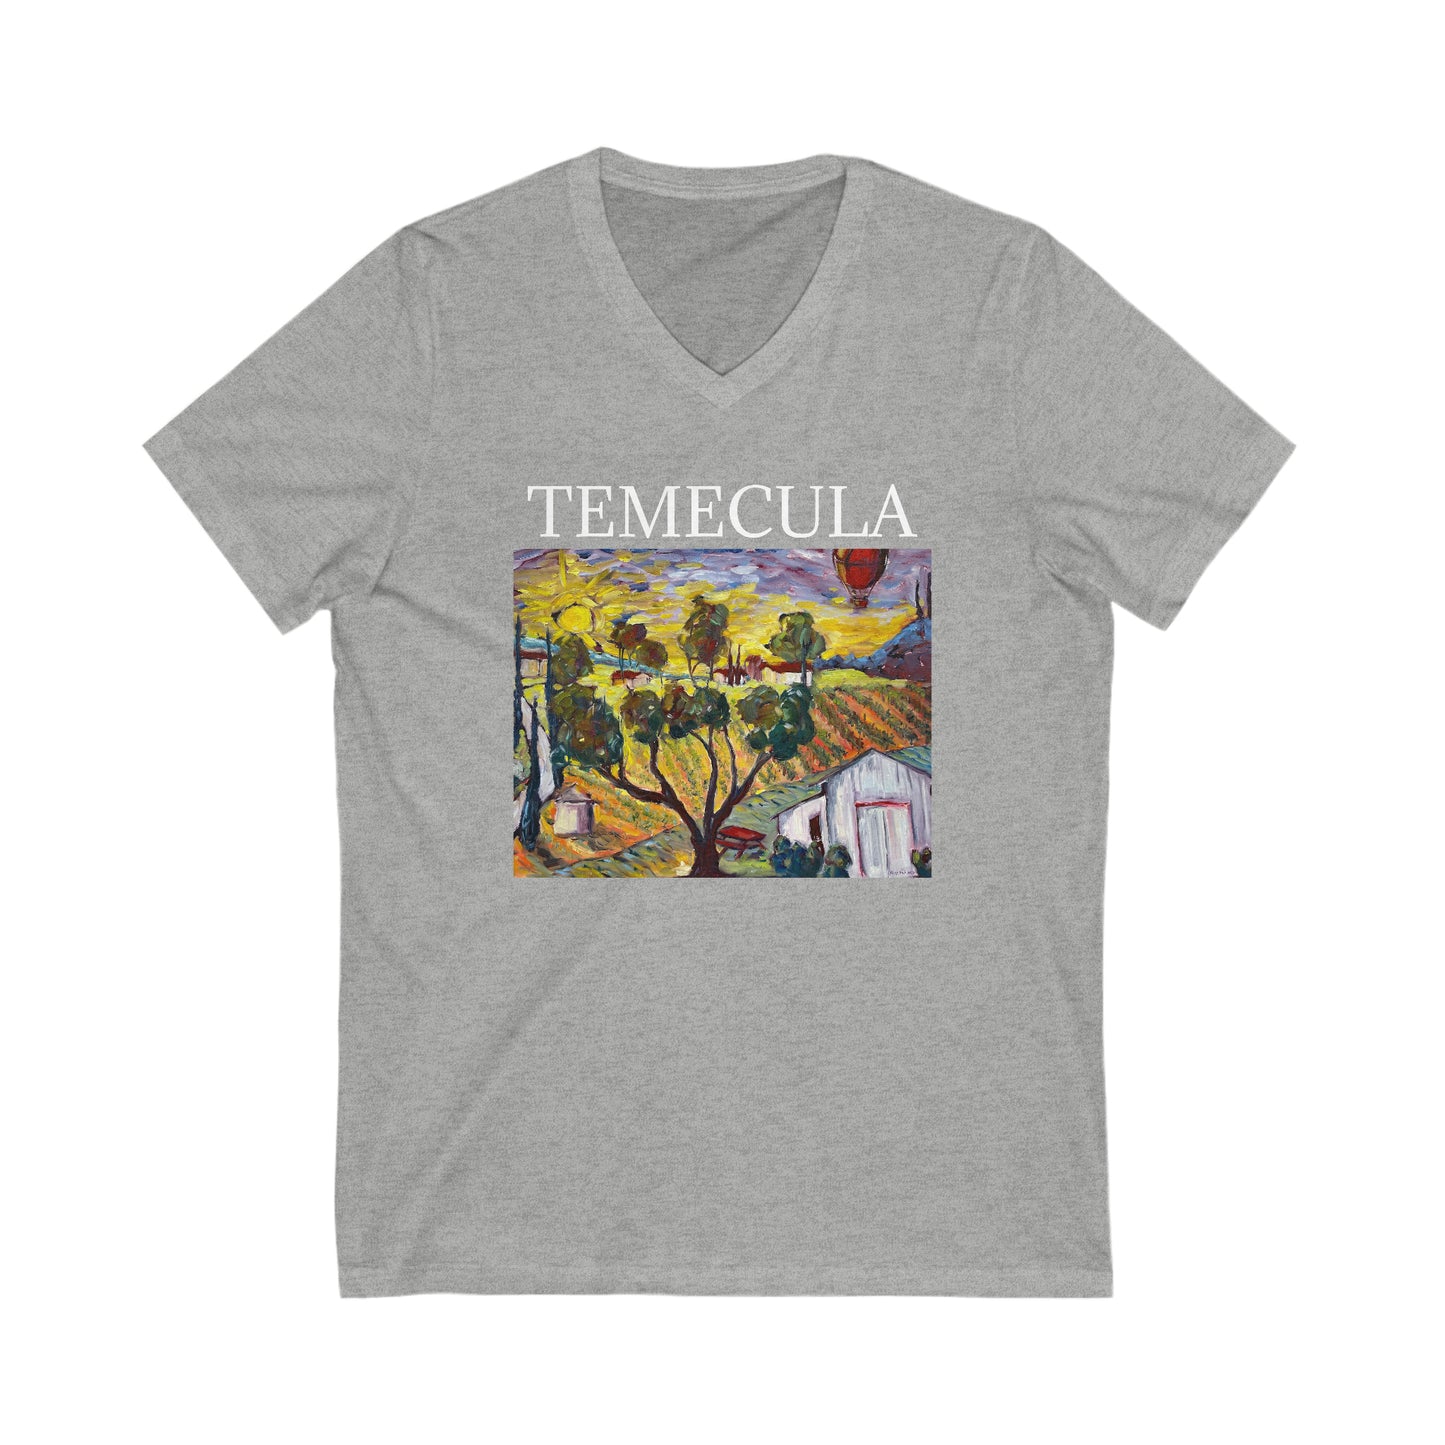 Ultimate Sunrise "TEMECULA" -Unisex Jersey Short Sleeve V-Neck Tee